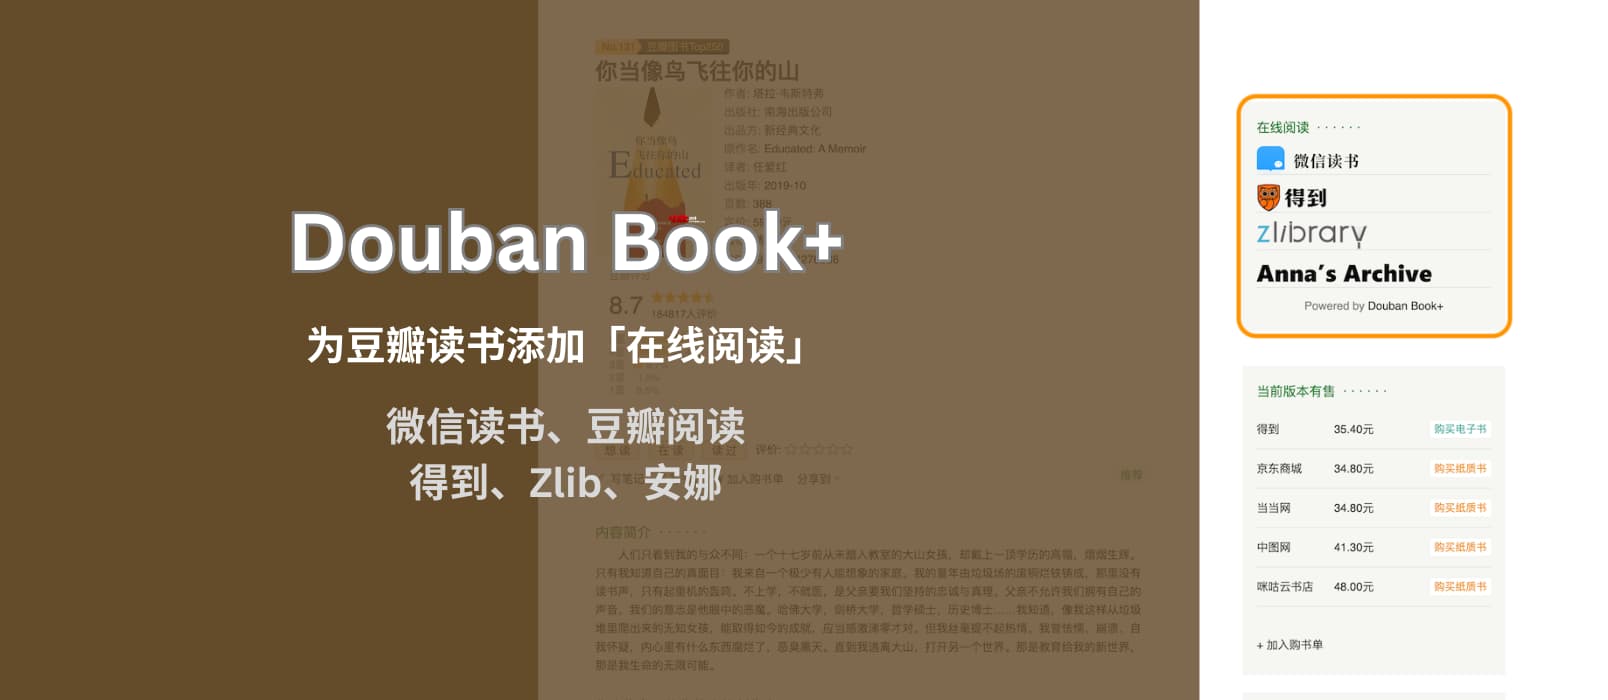 Douban Book+ 为豆瓣读书页面添加「在线阅读」链接，支持微信读书、豆瓣阅读、得到、网易蜗牛、多看、Zlibrary、安娜[Chrome/Firefox]